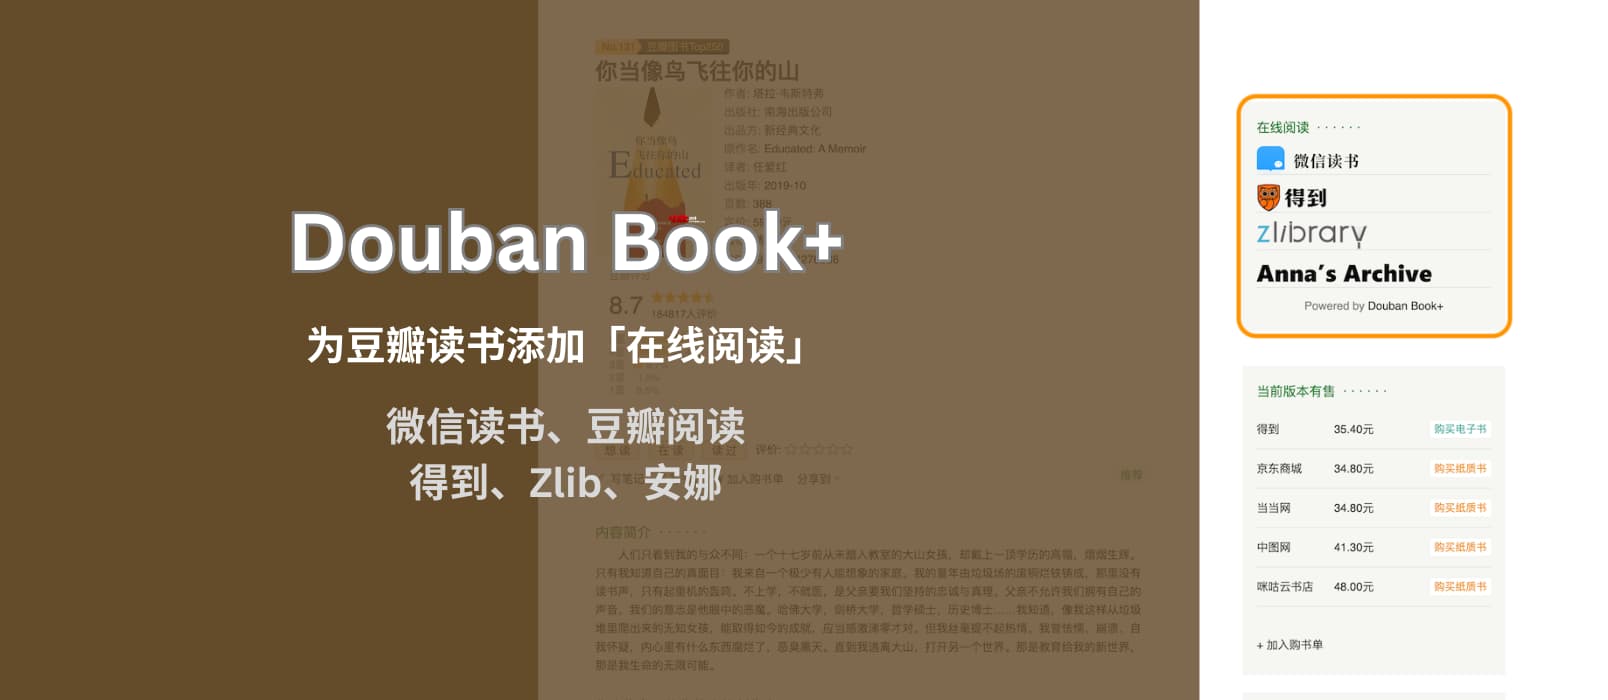 Douban Book+ 为豆瓣读书页面添加「在线阅读」链接，支持微信读书、豆瓣阅读、得到、网易蜗牛、多看、Zlibrary、安娜[Chrome/Firefox]